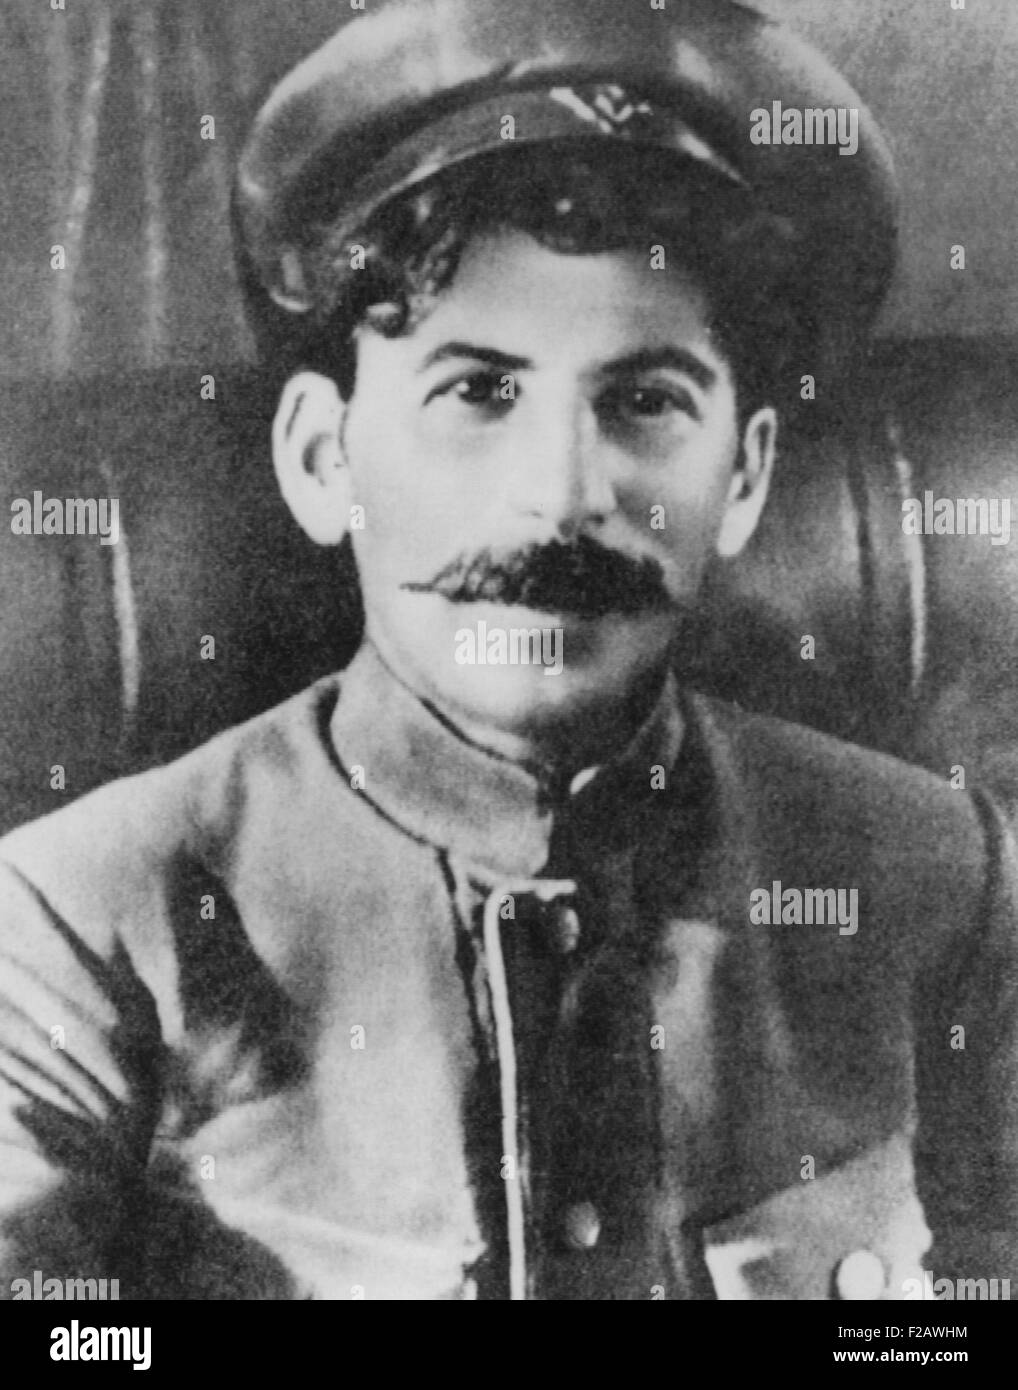 Josef Stalin come un rivoluzionario sovietico durante la guerra mondiale 1. Ca. 1915. (CSU 2015 11 1370) Foto Stock